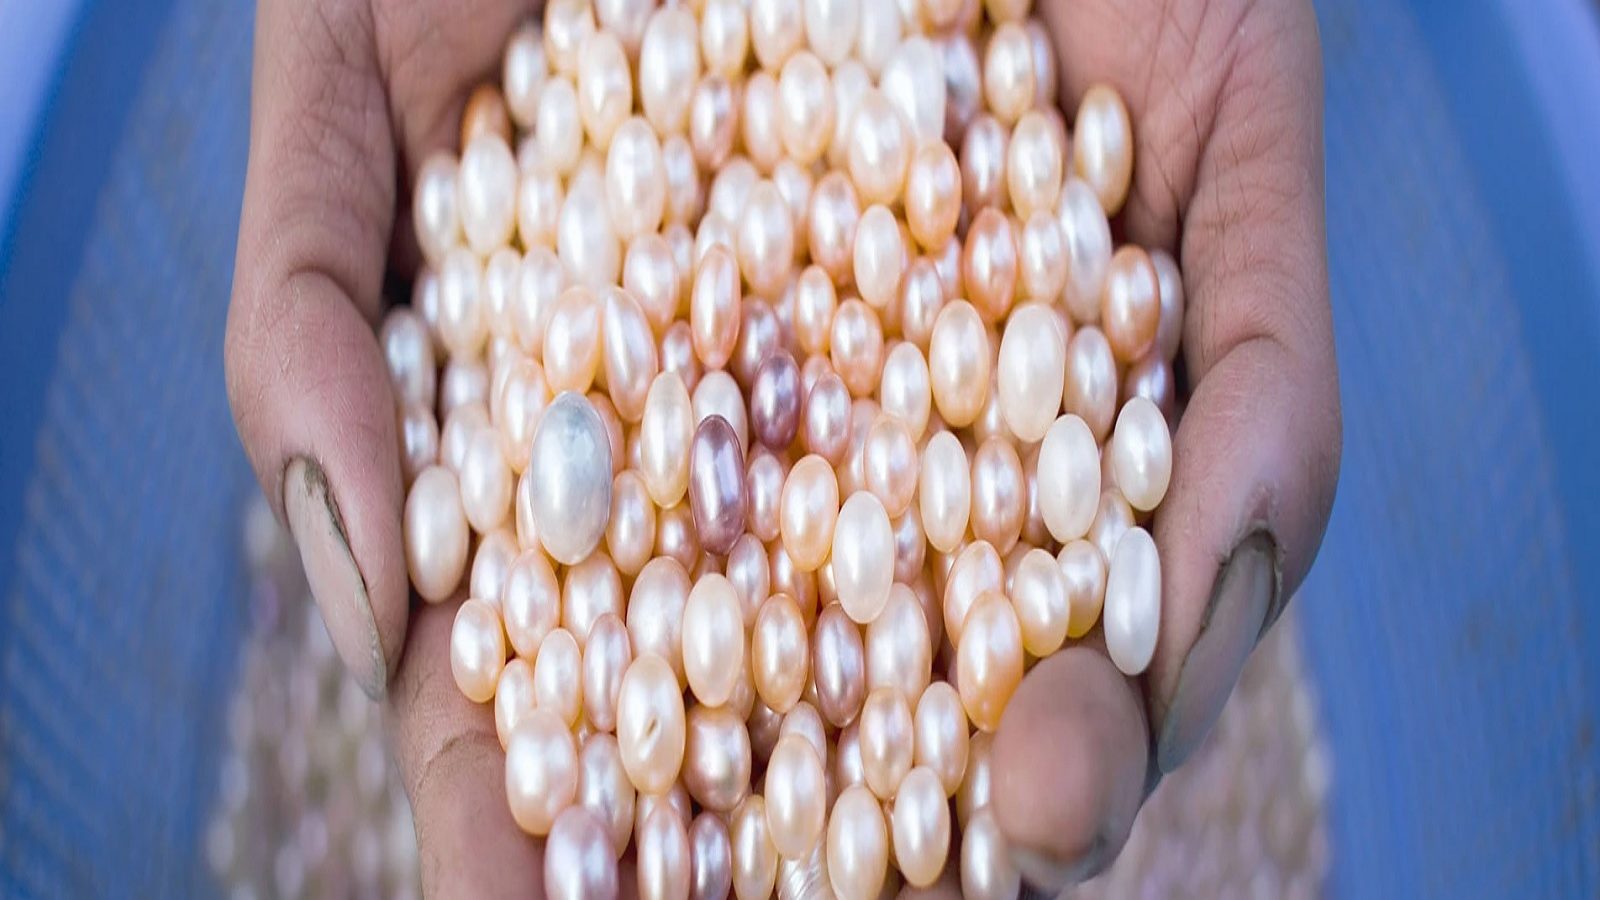 Pearl Farming Business: 25 ਹਜ਼ਾਰ ‘ਚ ਸ਼ੁਰੂ ਕਰੋ ਇਹ ਕਾਰੋਬਾਰ, 4 ਸਾਲਾਂ ‘ਚ ਬਣ ਜਾਓਗੇ ਕਰੋੜਪਤੀ